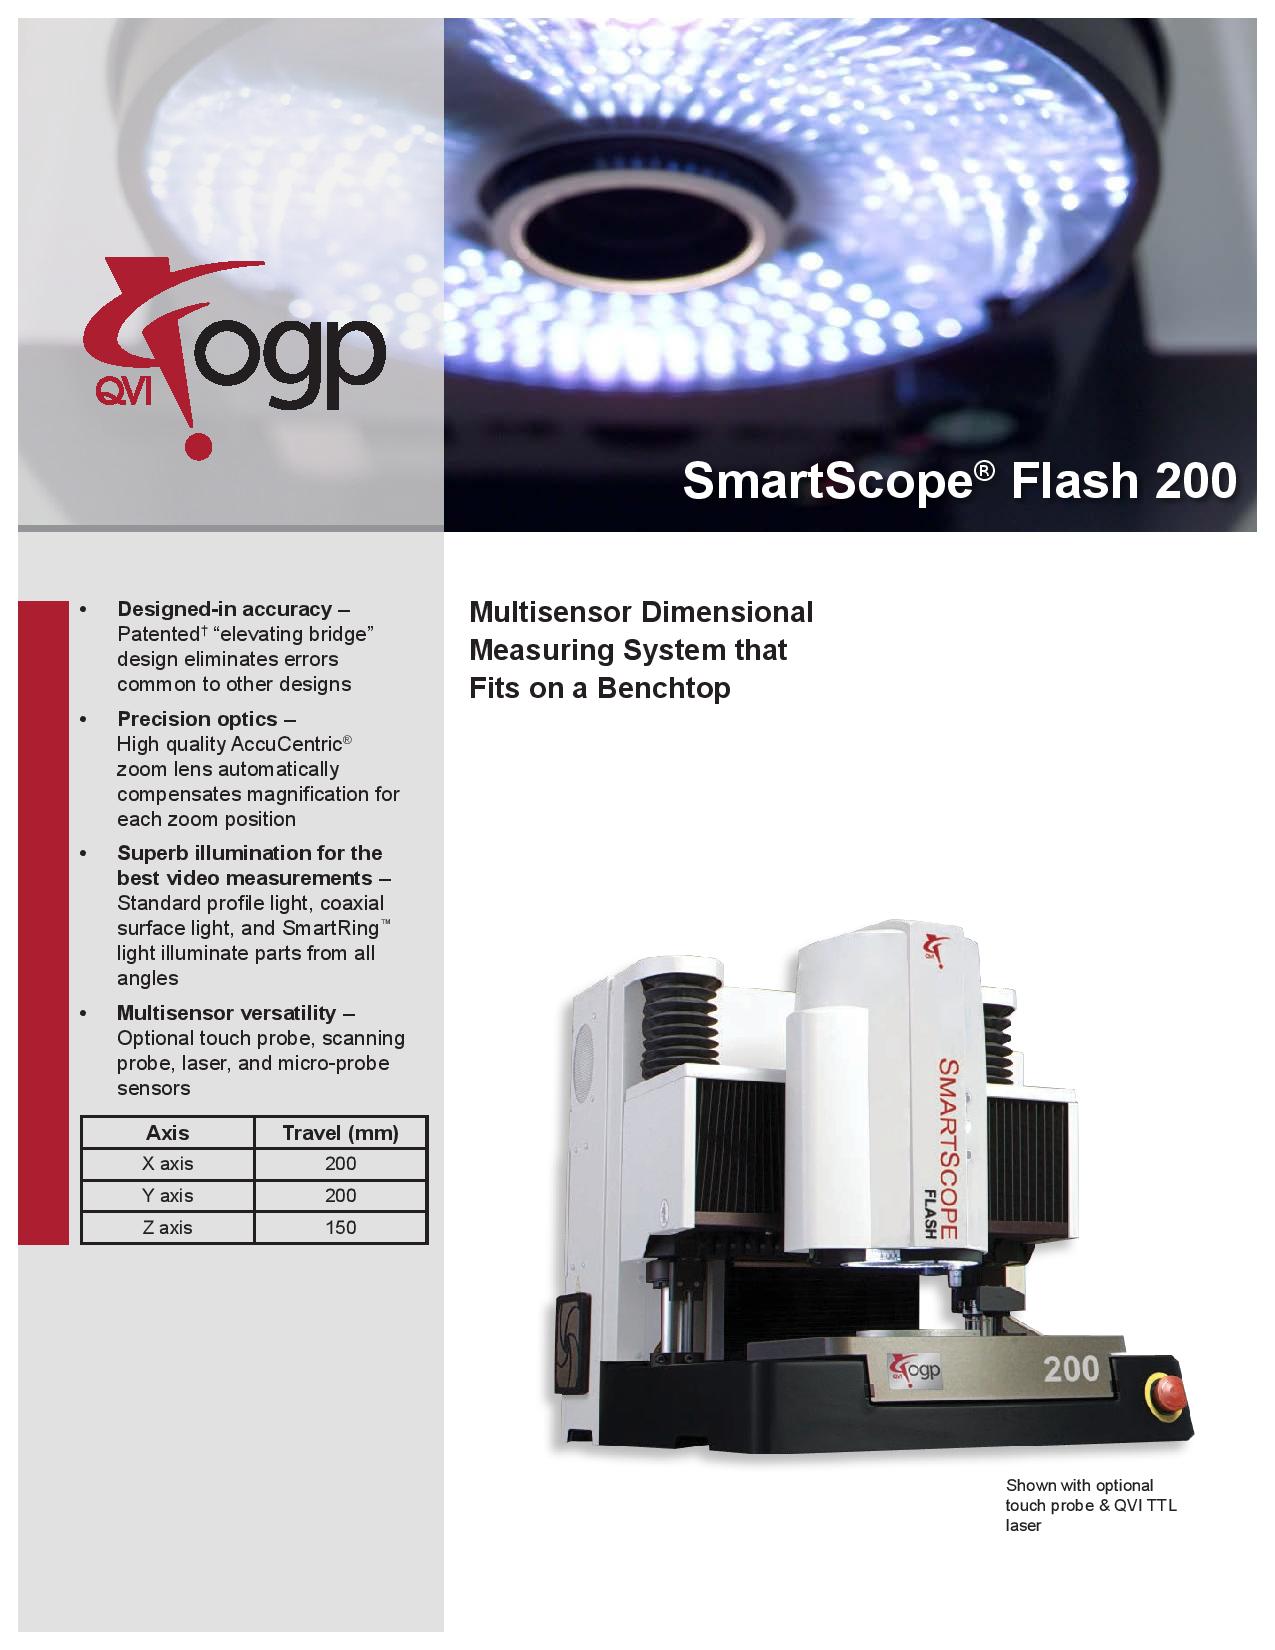 ogp smartscope flash 302 manual